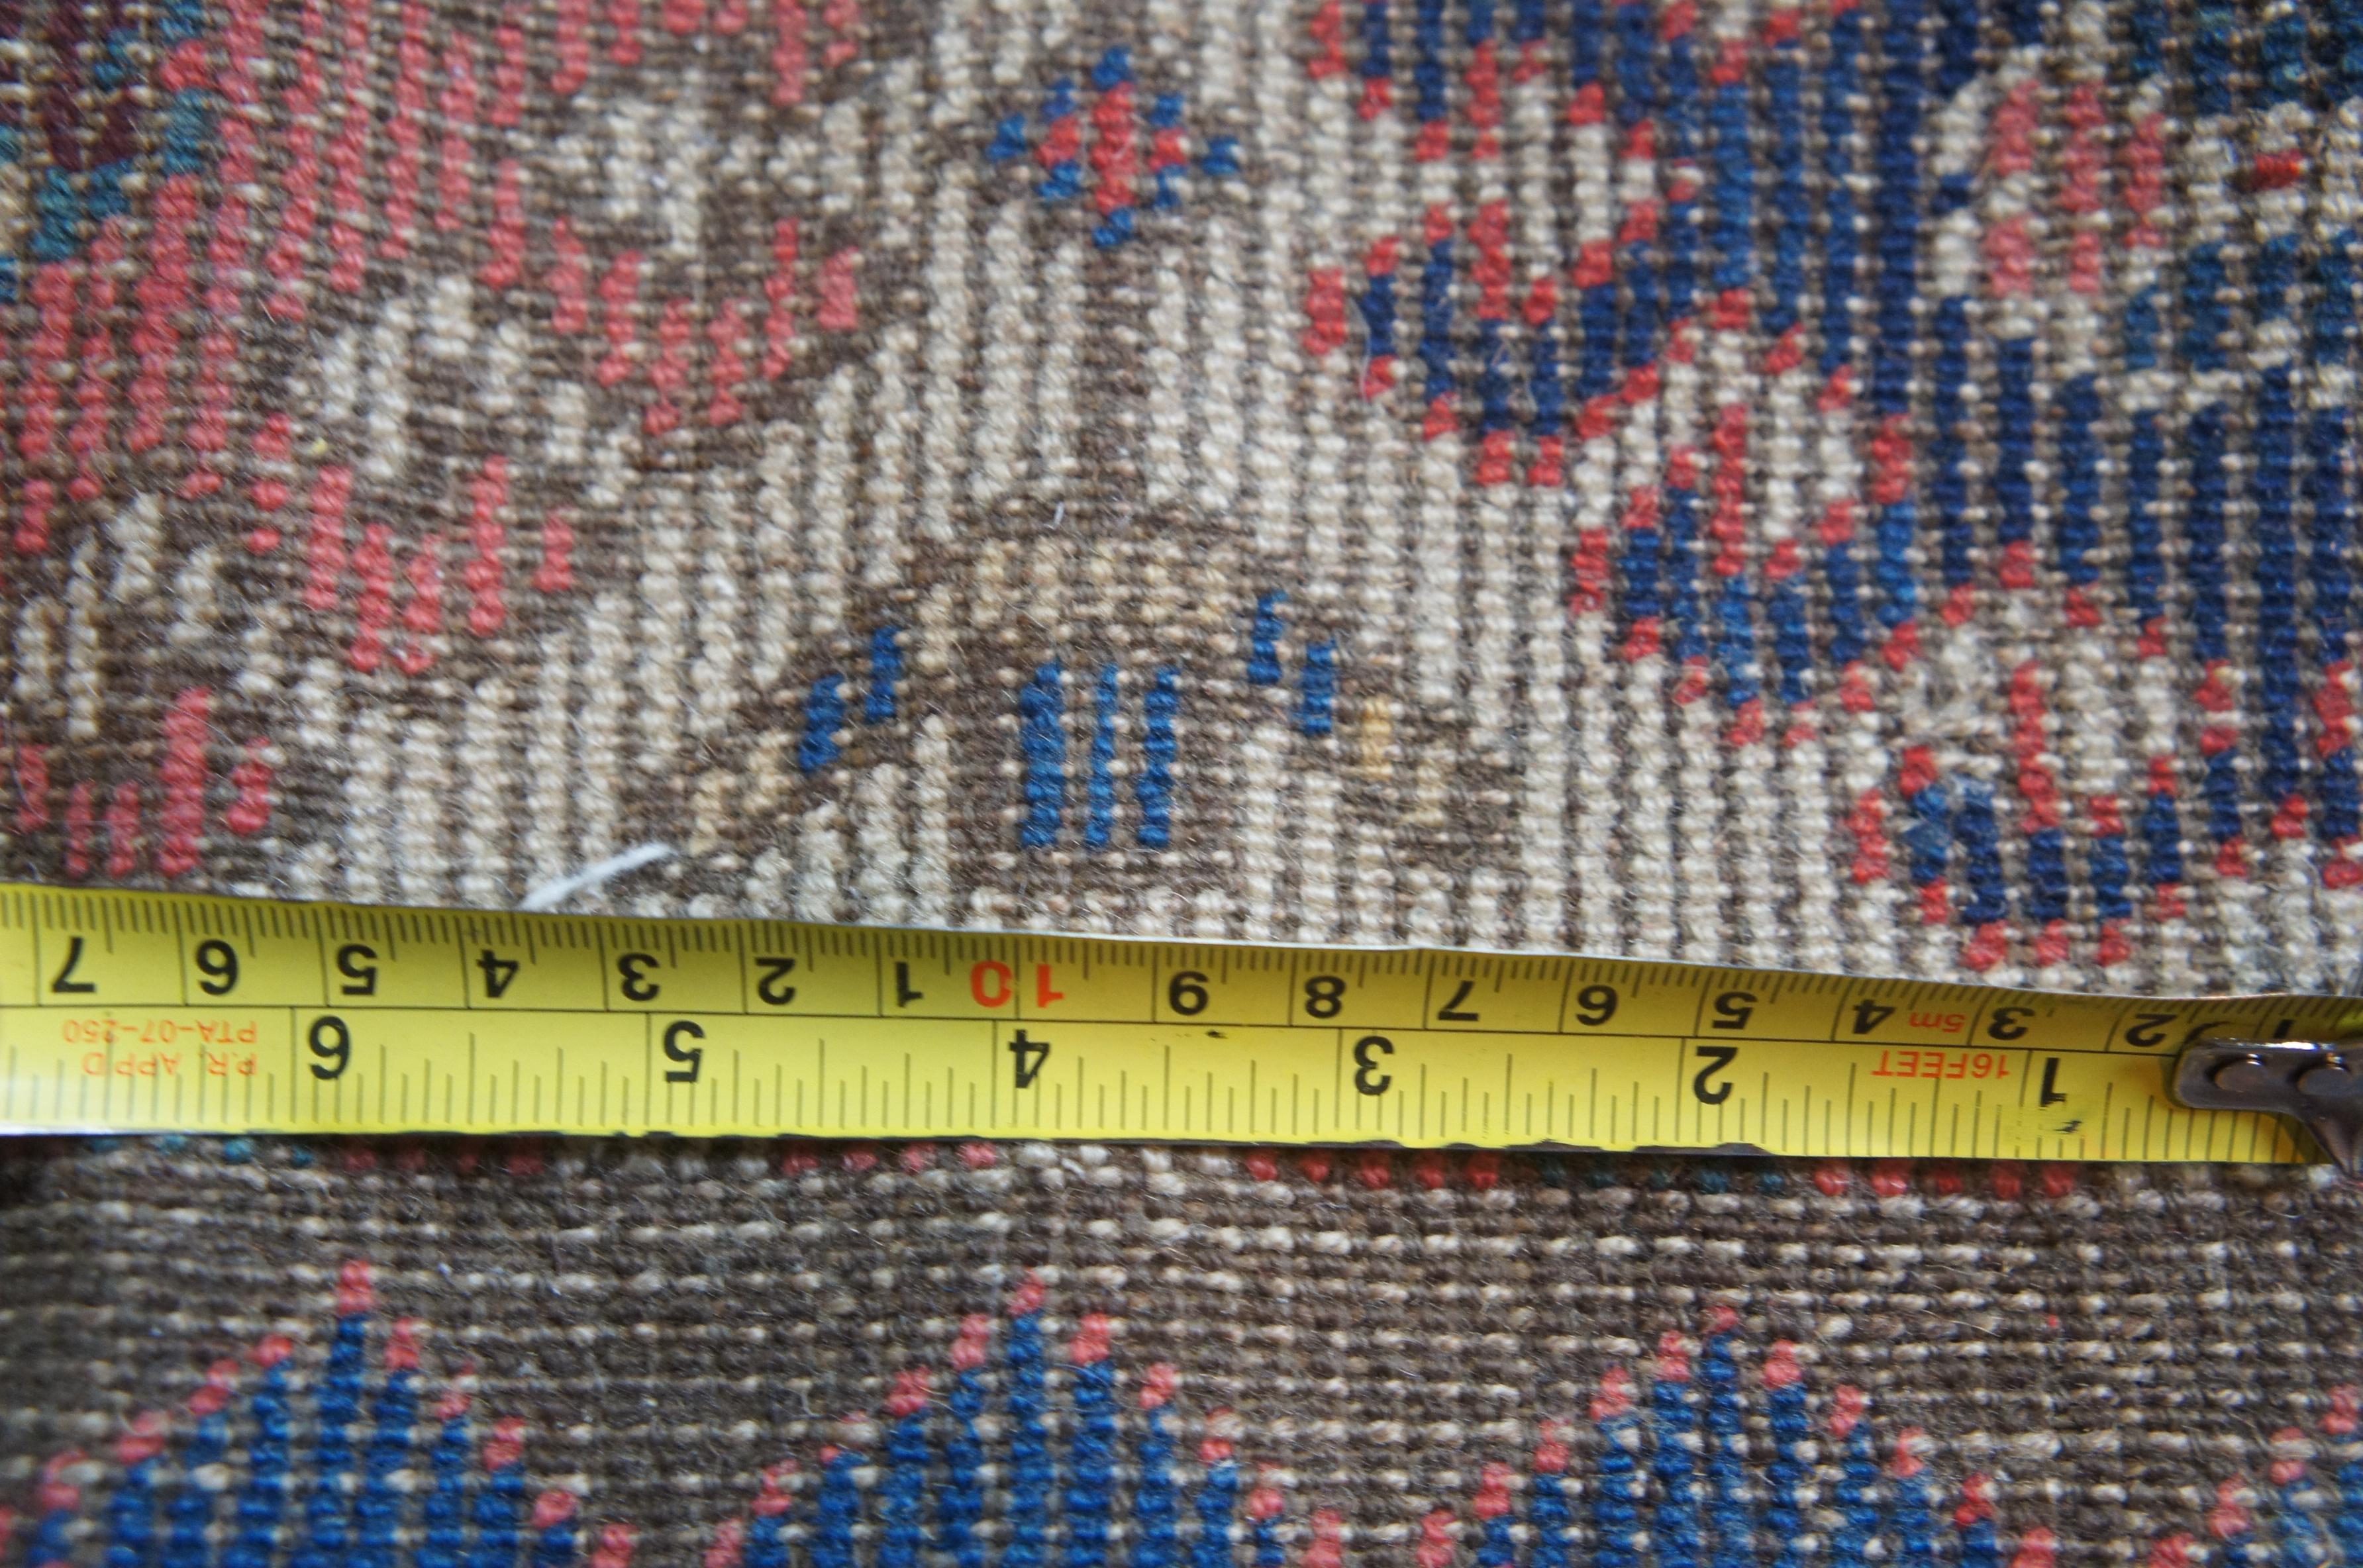 Antique Persian Kilim Area Rug Runner Carpet 5